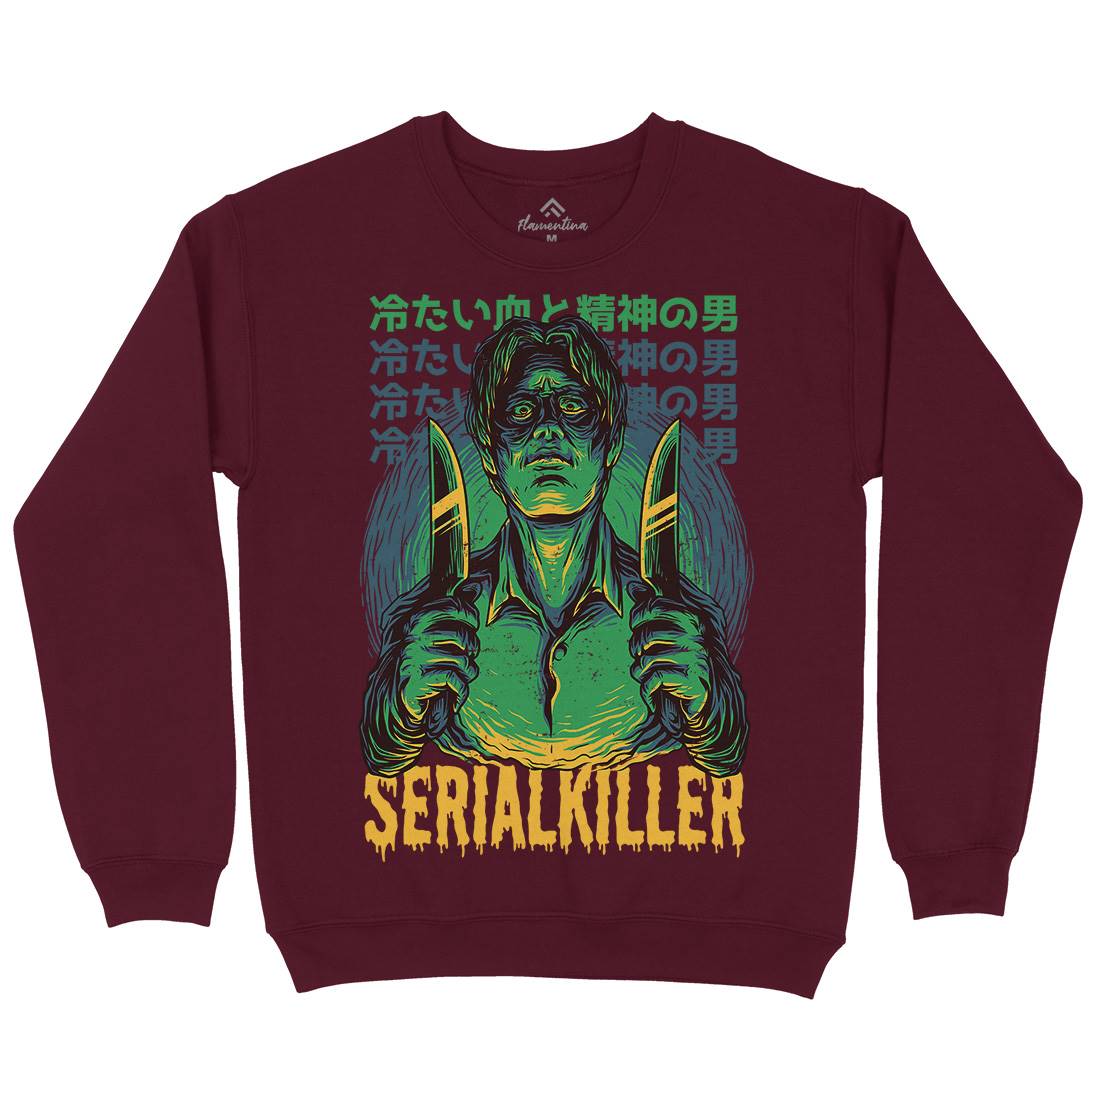 Serial Killer Kids Crew Neck Sweatshirt Horror D811